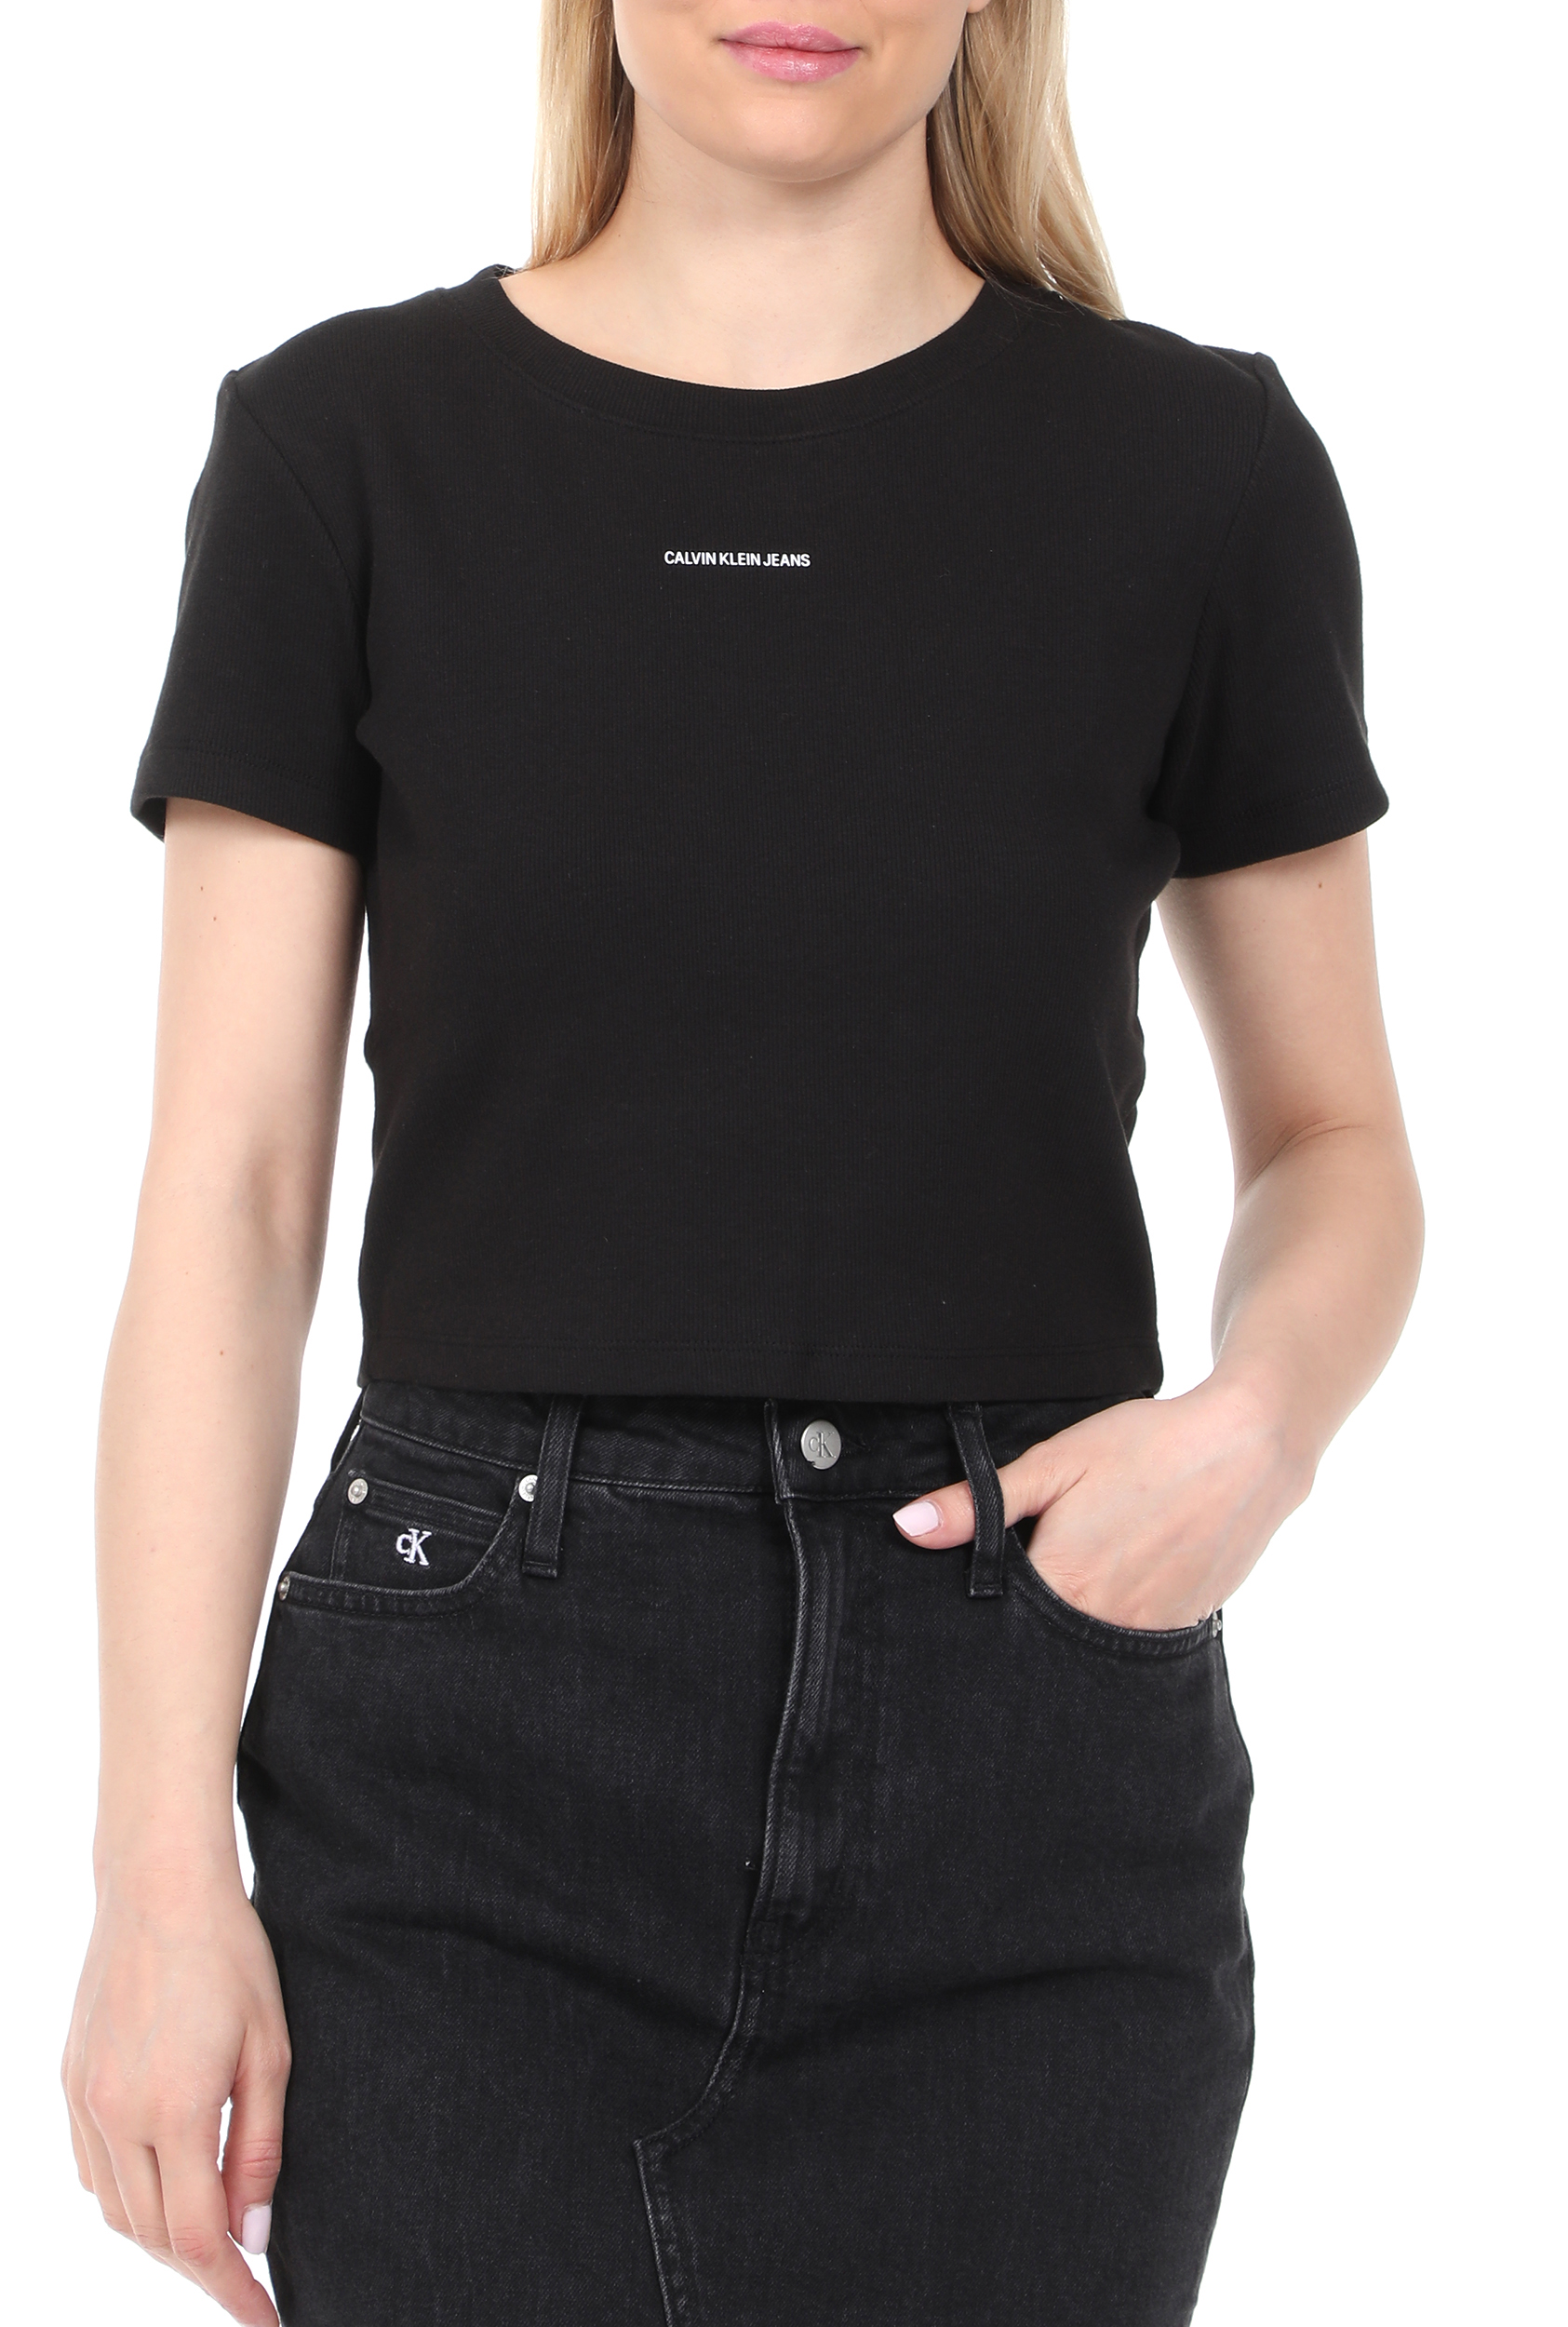 Γυναικεία/Ρούχα/Μπλούζες/Κοντομάνικες CALVIN KLEIN JEANS - Γυναικεία μπλούζα CALVIN KLEIN JEANS MICRO BRANDING CROP RIB μαύρη